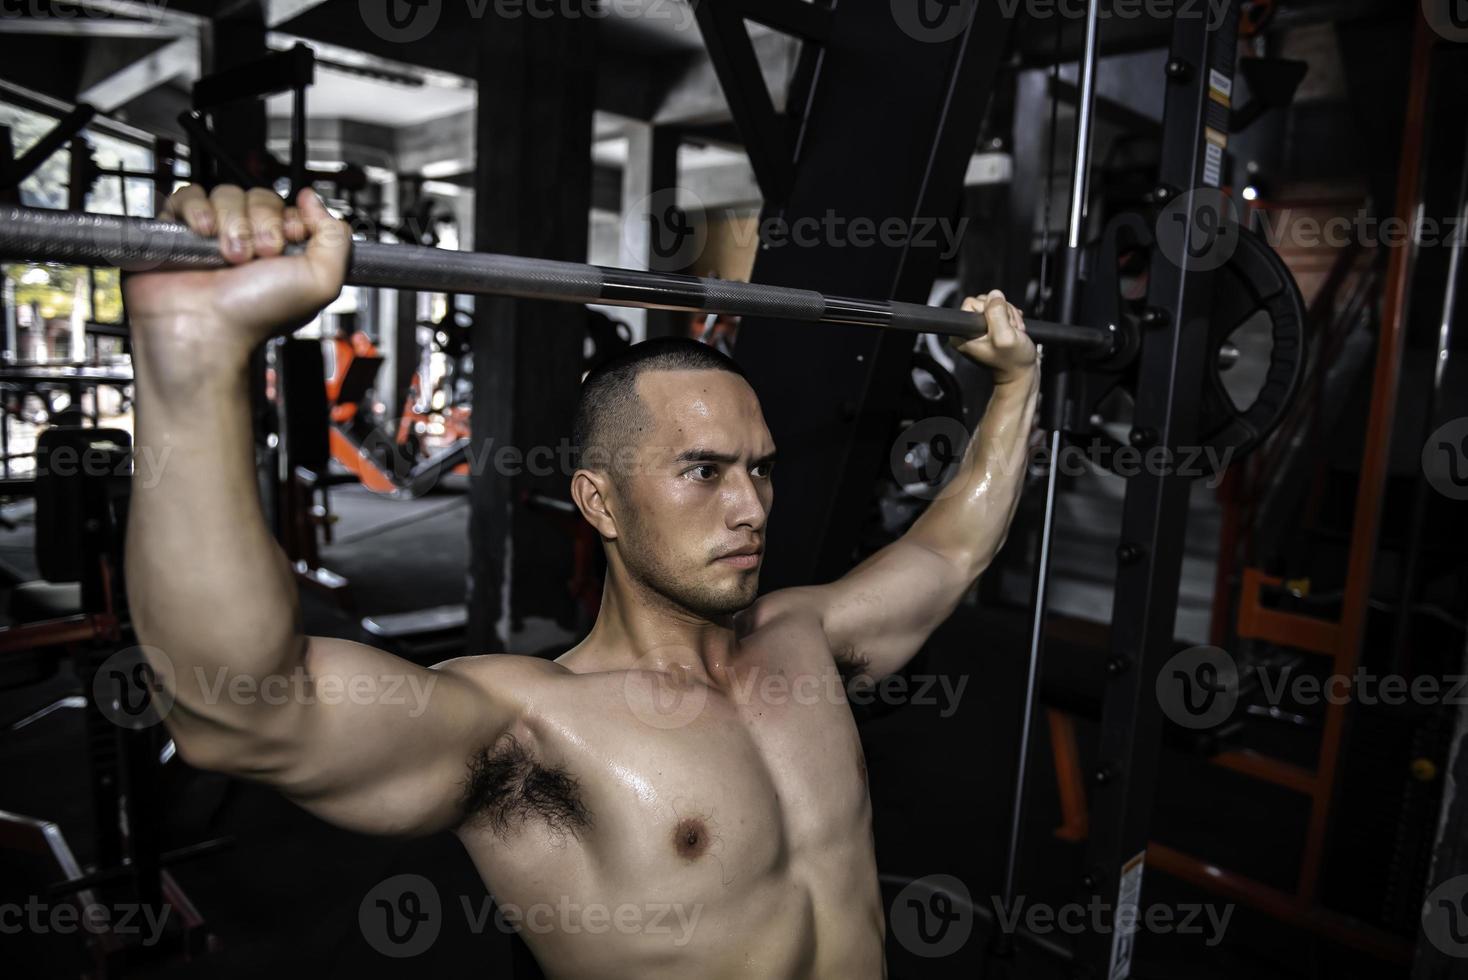 porträtt av asiatisk man stor muskel på de gym, thailand människor, träning för Bra hälsosam kropp vikt träning, kondition på de Gym koncept, skämt till abdominal muskler foto